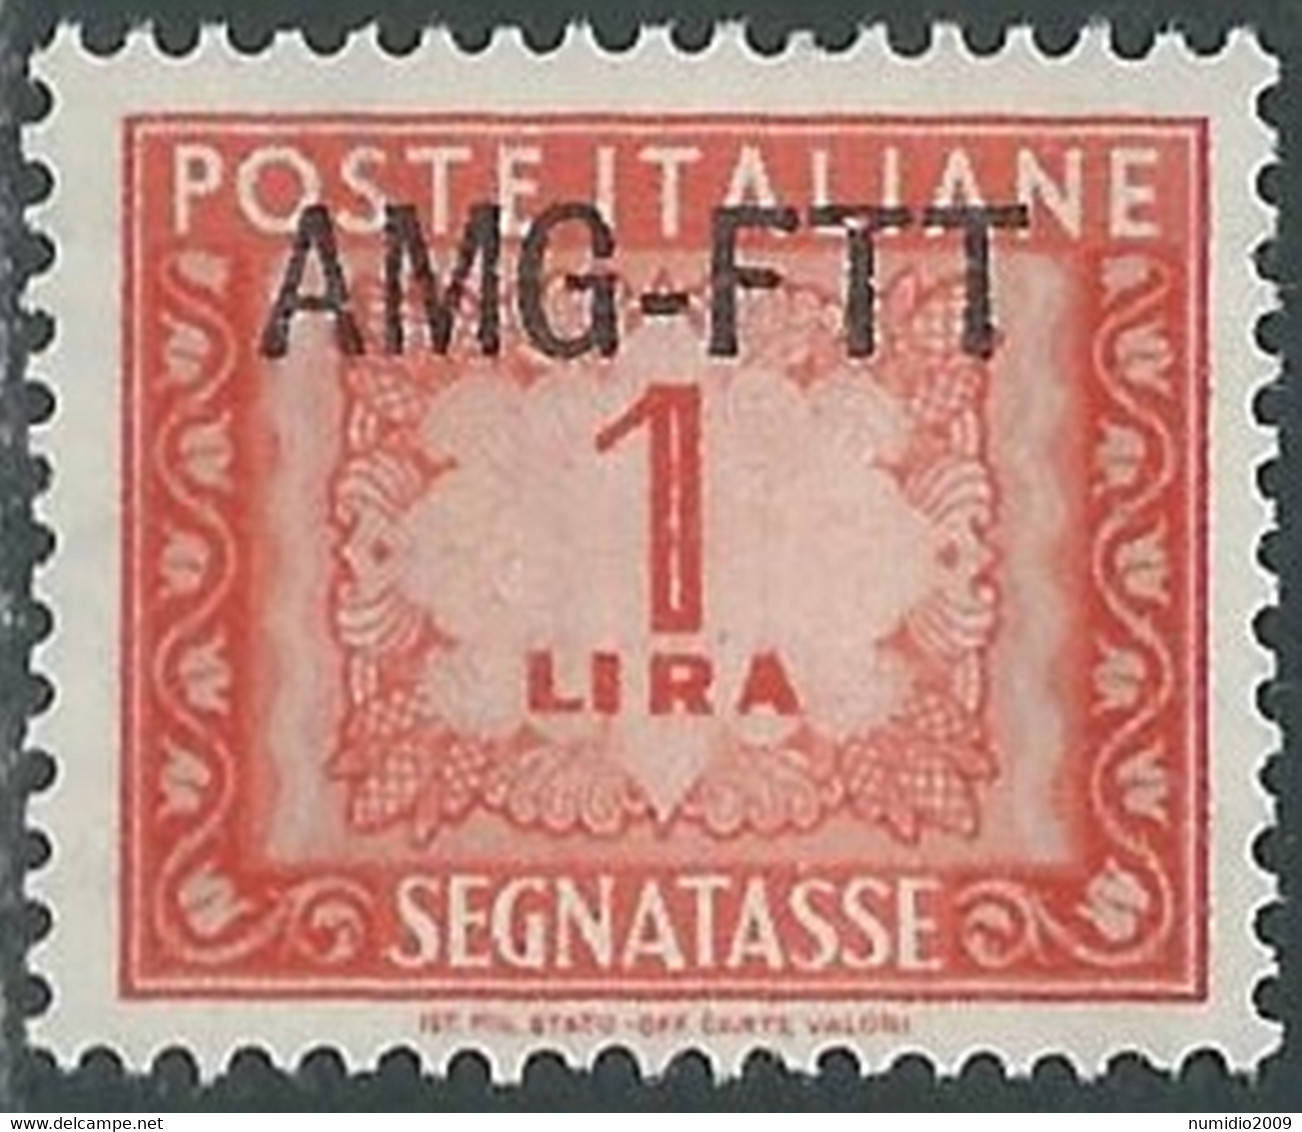 1949-54 TRIESTE A SEGNATASSE 1 LIRA MNH ** - RE10-8 - Portomarken